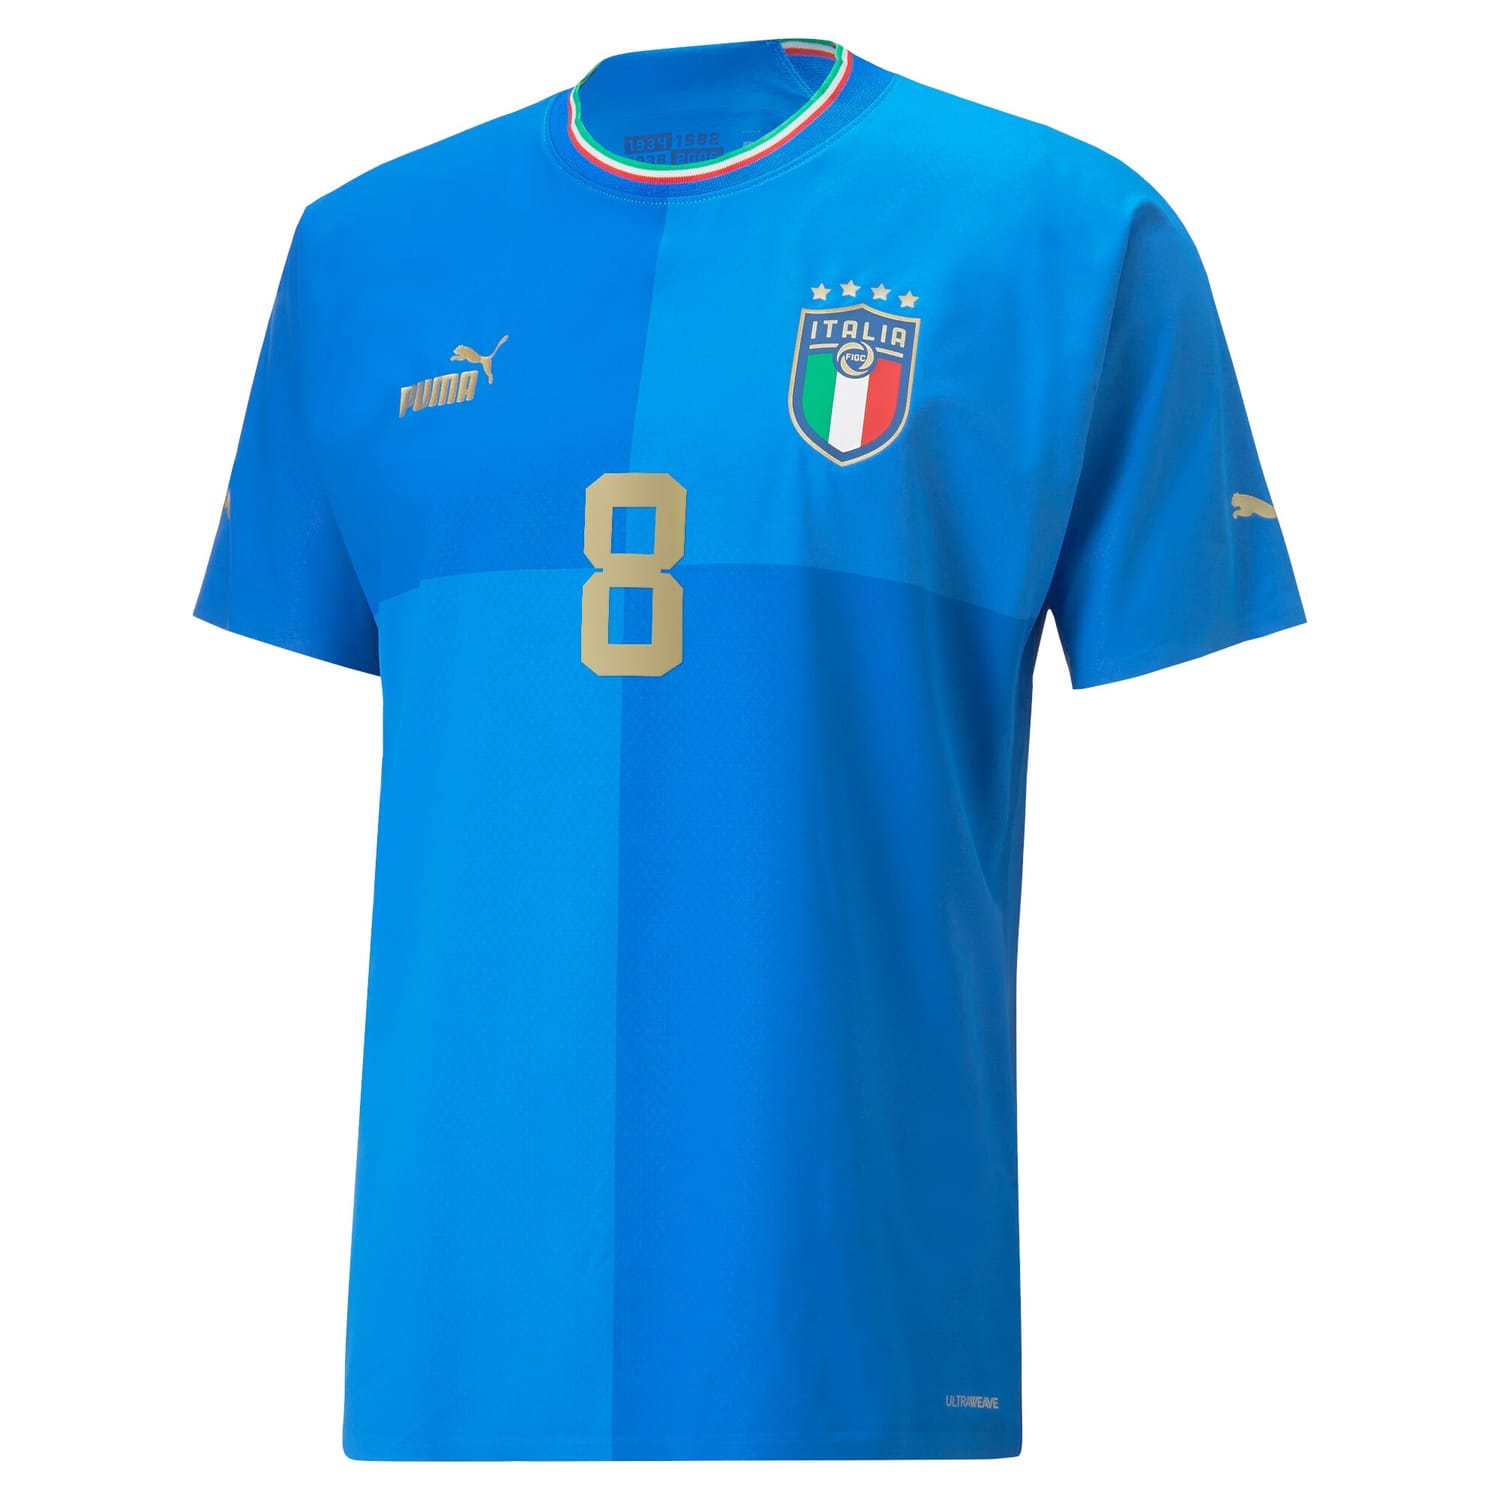 Italy National Team Home Authentic Jersey Shirt player Jorginho 8 printing for Men